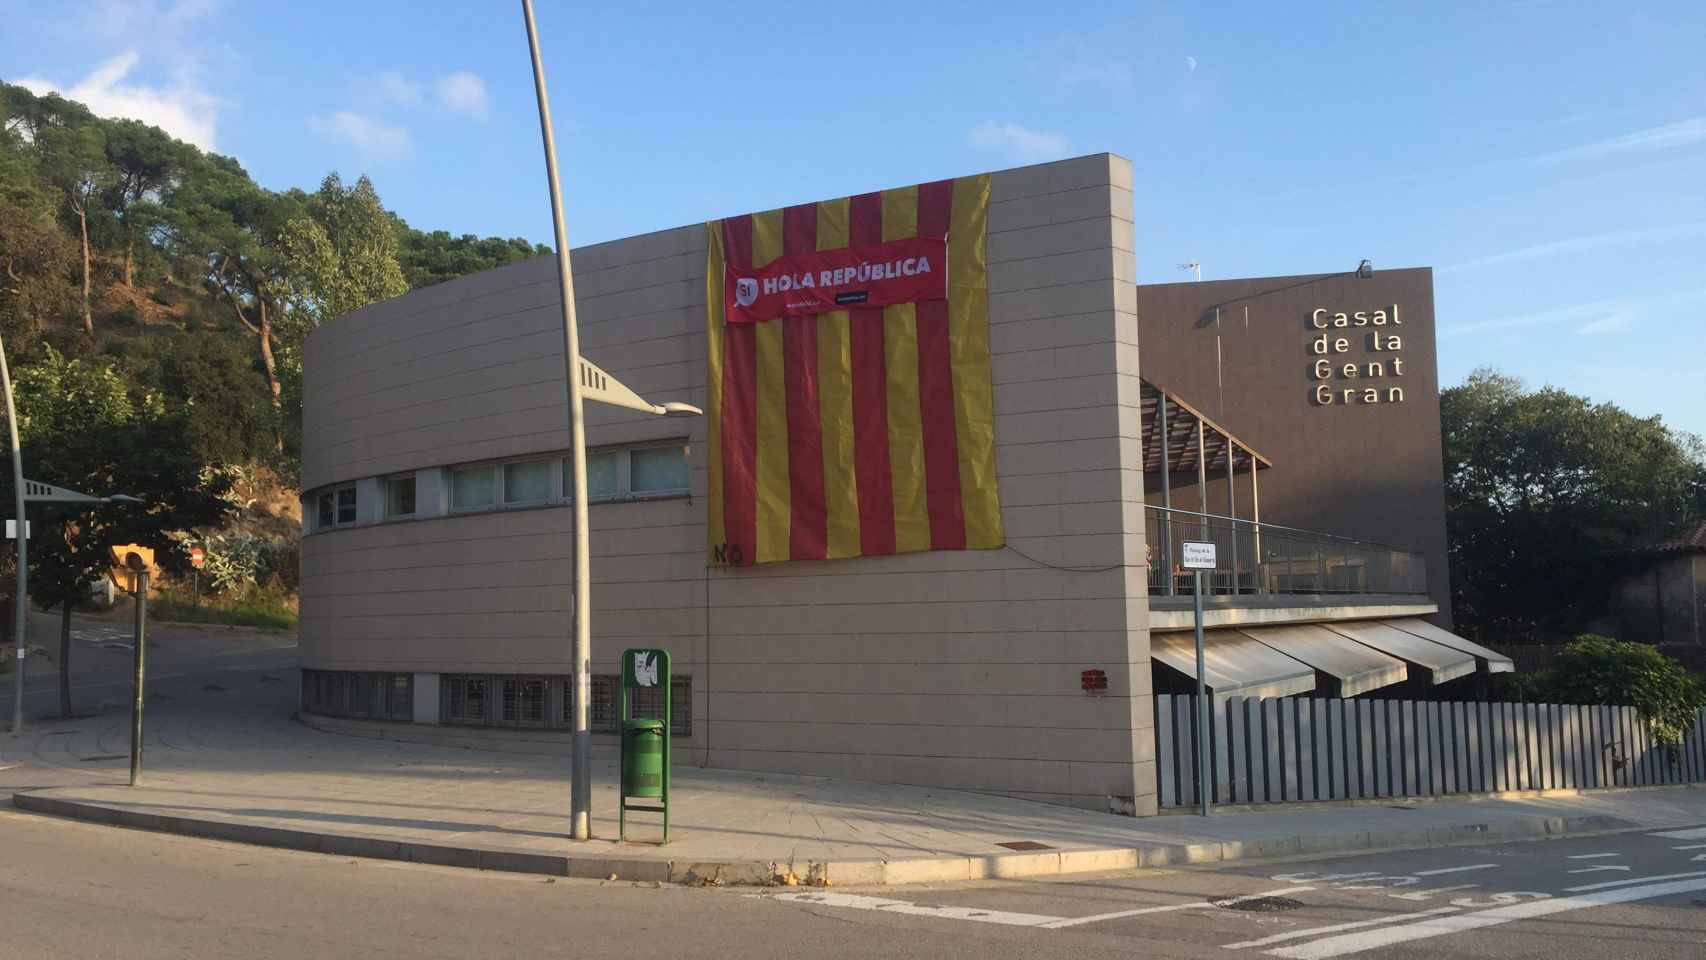 Alguien ha pintado un NO en la bandera catalana que da la bienvenida a la República